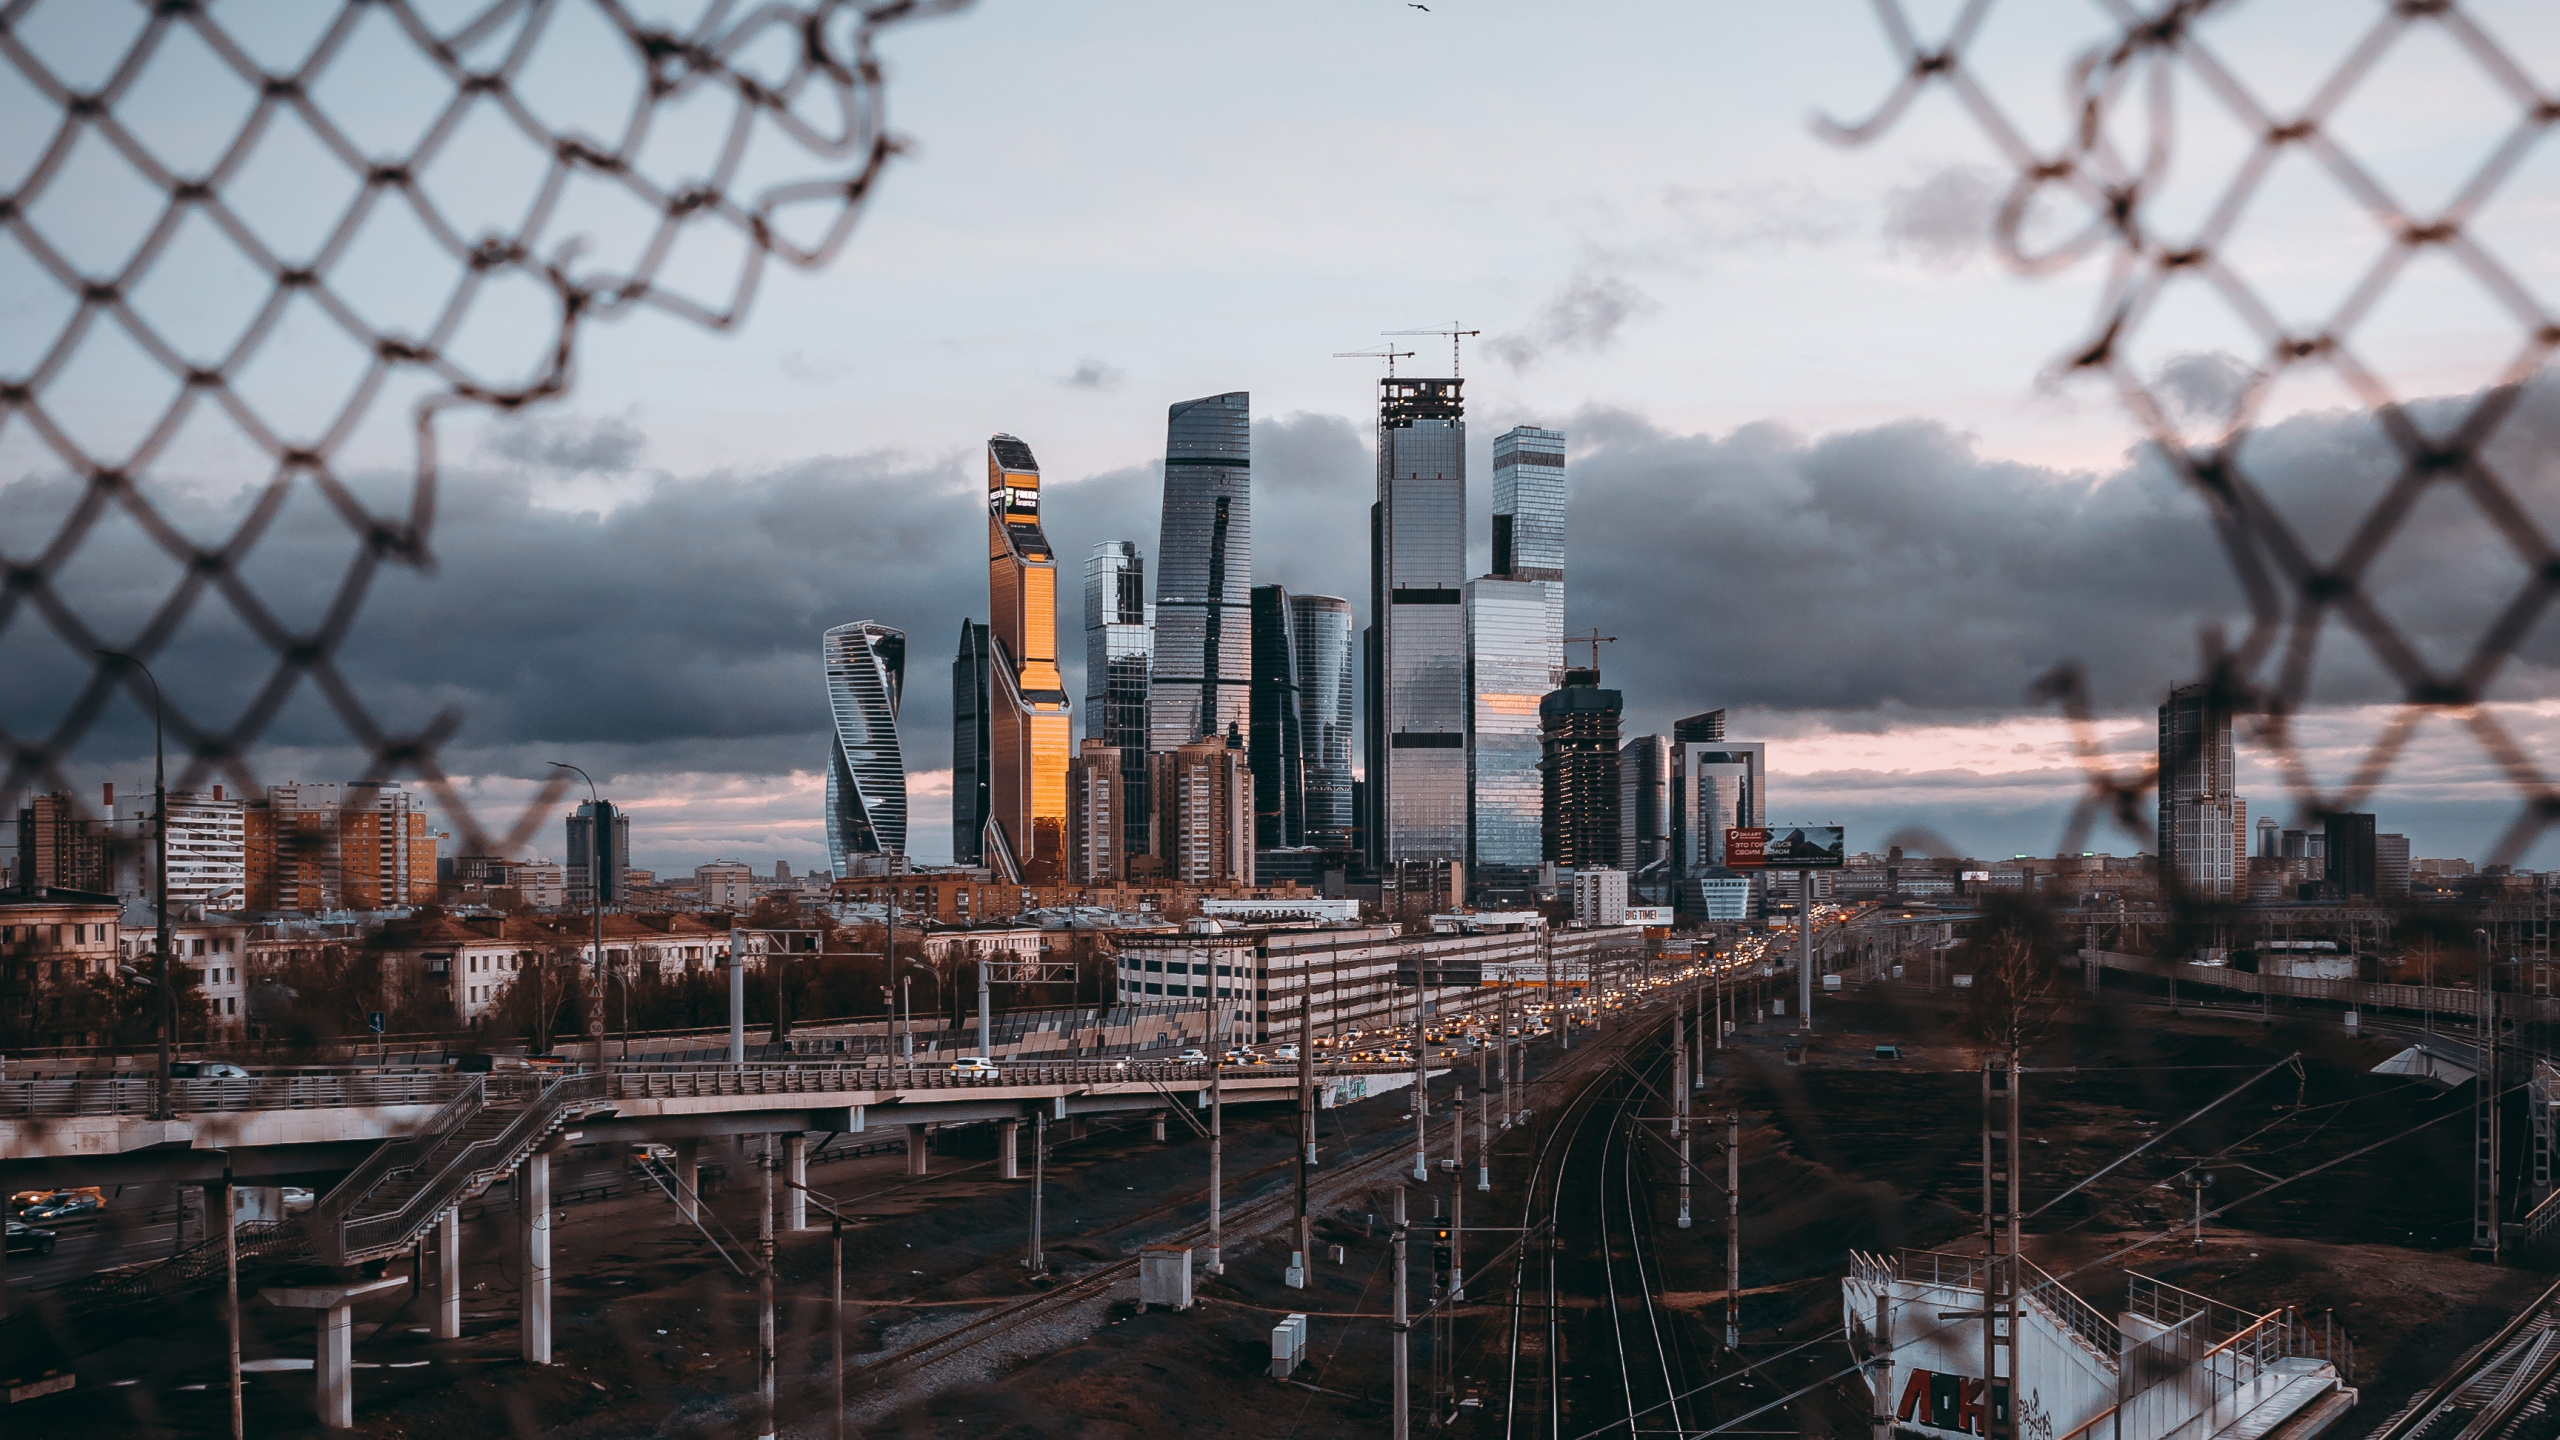 莫斯科, 大都会, 城市, 人类住区, 城市景观 壁纸 2560x1440 允许